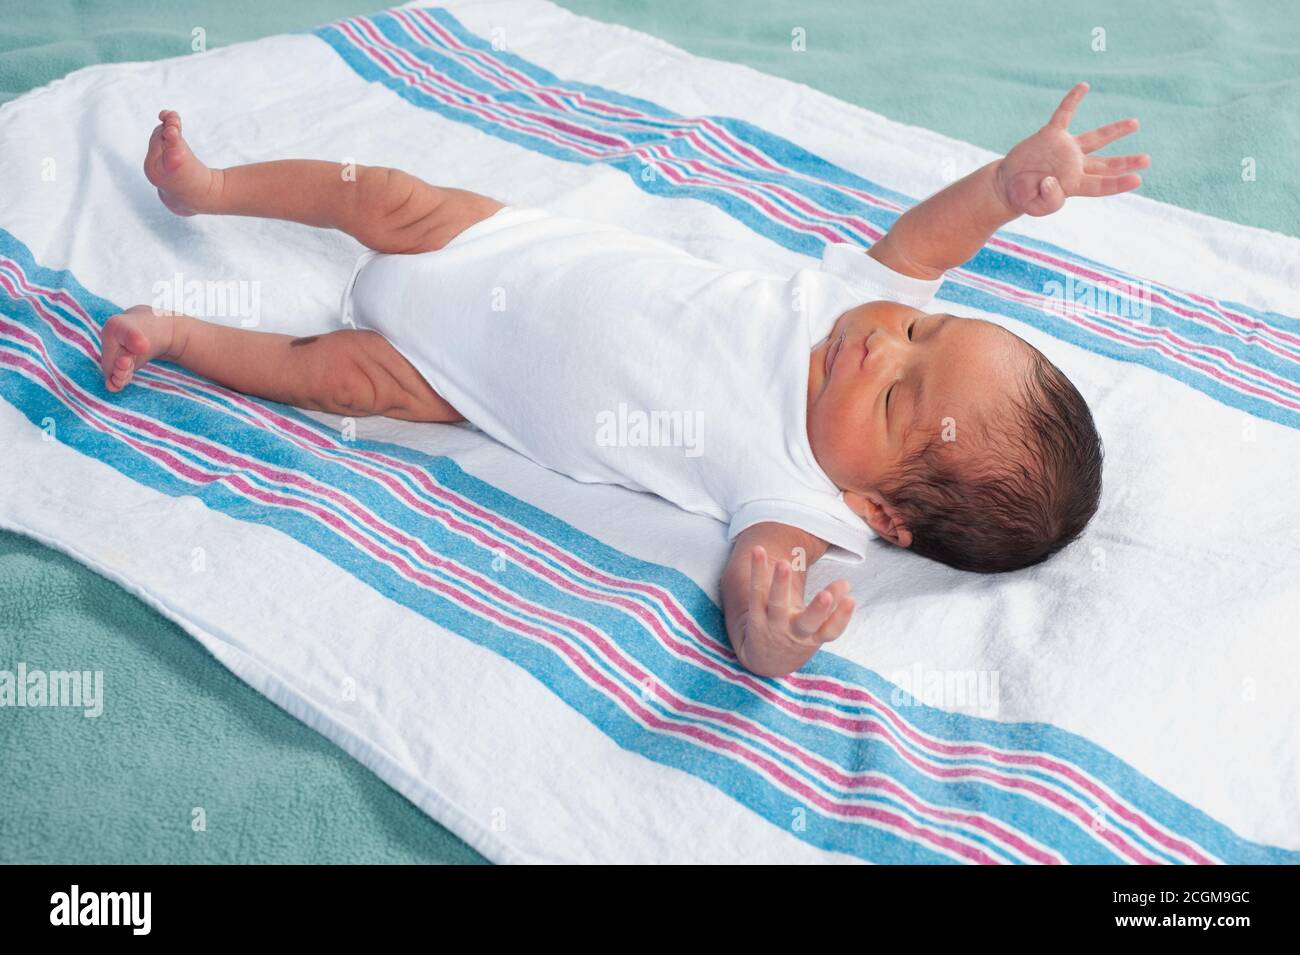 Neugeborener Junge, 1 Woche alt Reflex Moro (Schrecke), volle Länge auf dem Rücken, liegend auf der Empfangsdecke Stockfoto